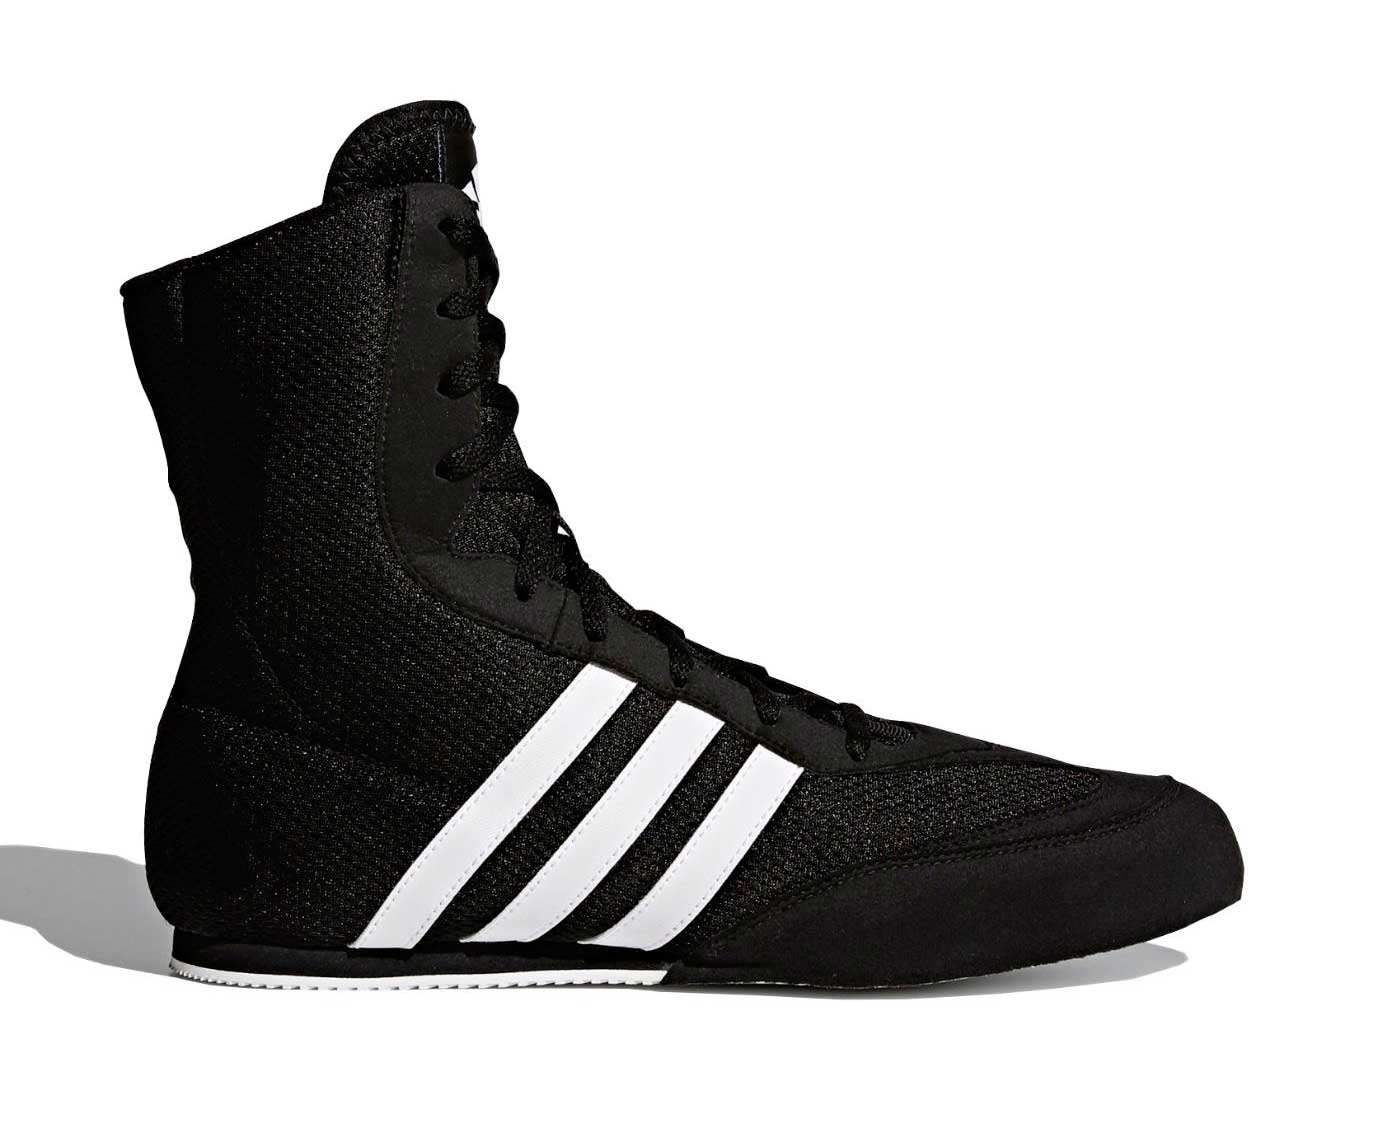 Боксерки Adidas Box Hog 2.0 черно-белые,  - купить со скидкой